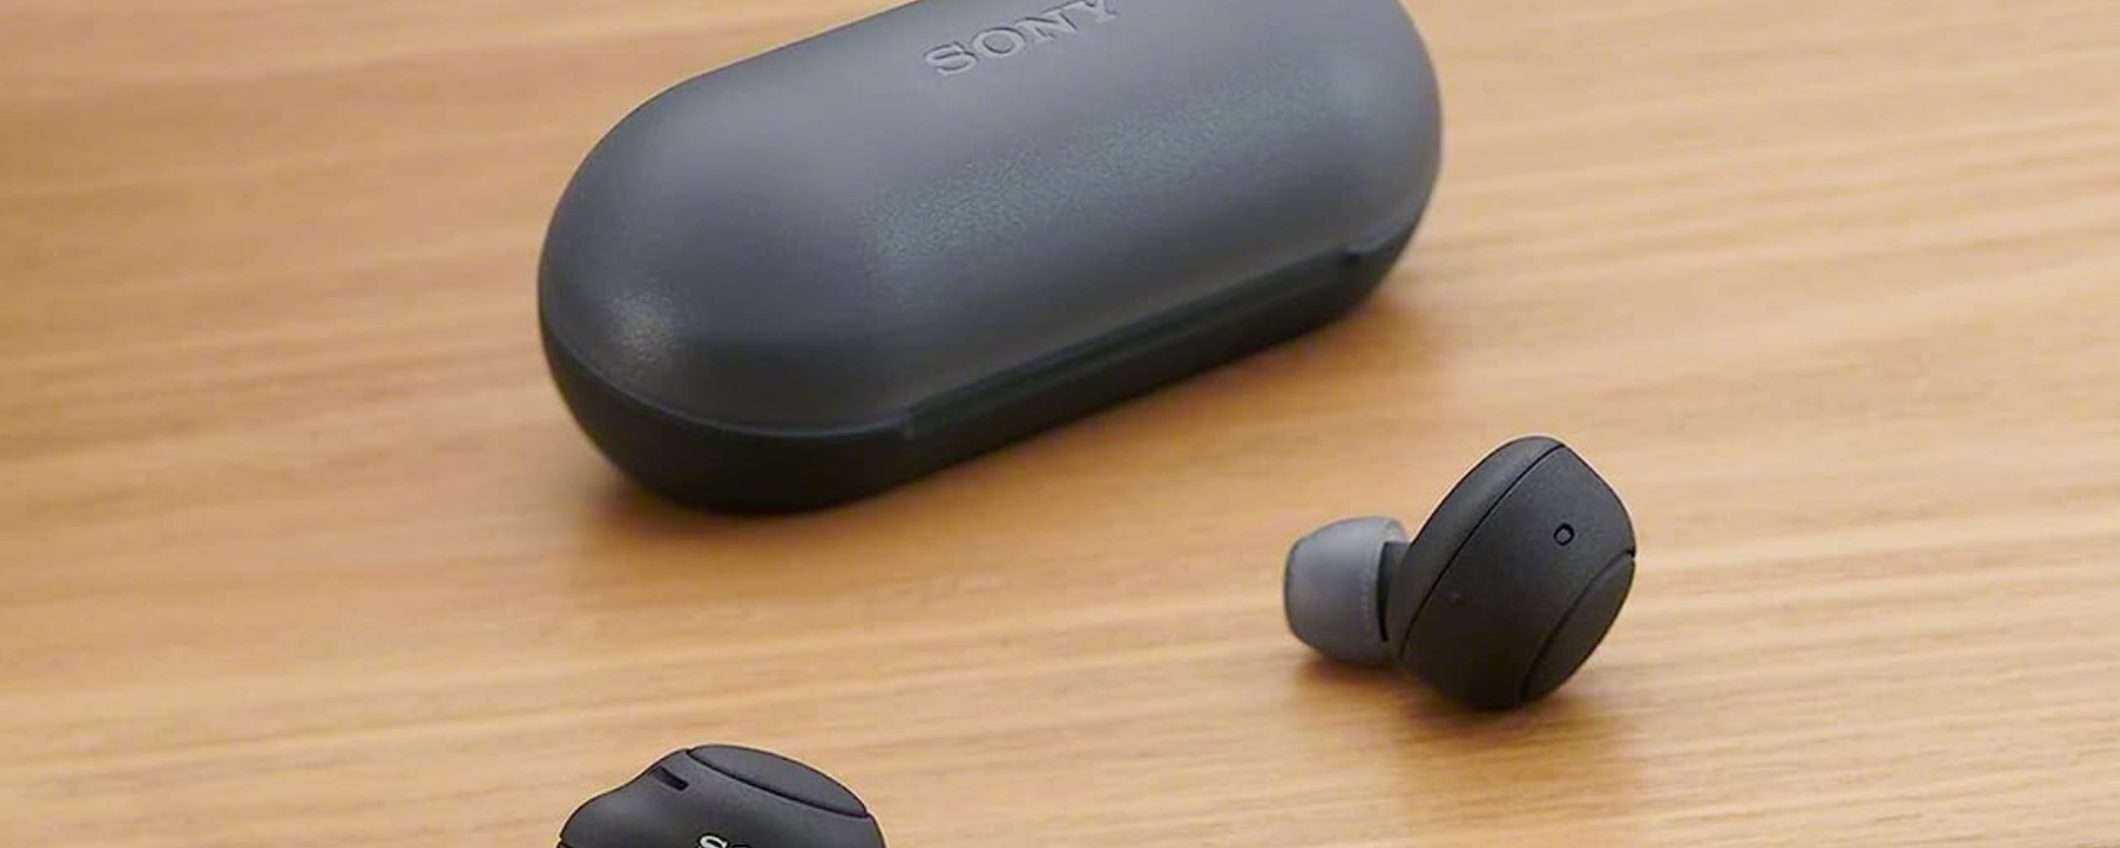 Sound SPAZIALE e design PREMIUM: Sony WF-C500 al 53% in meno